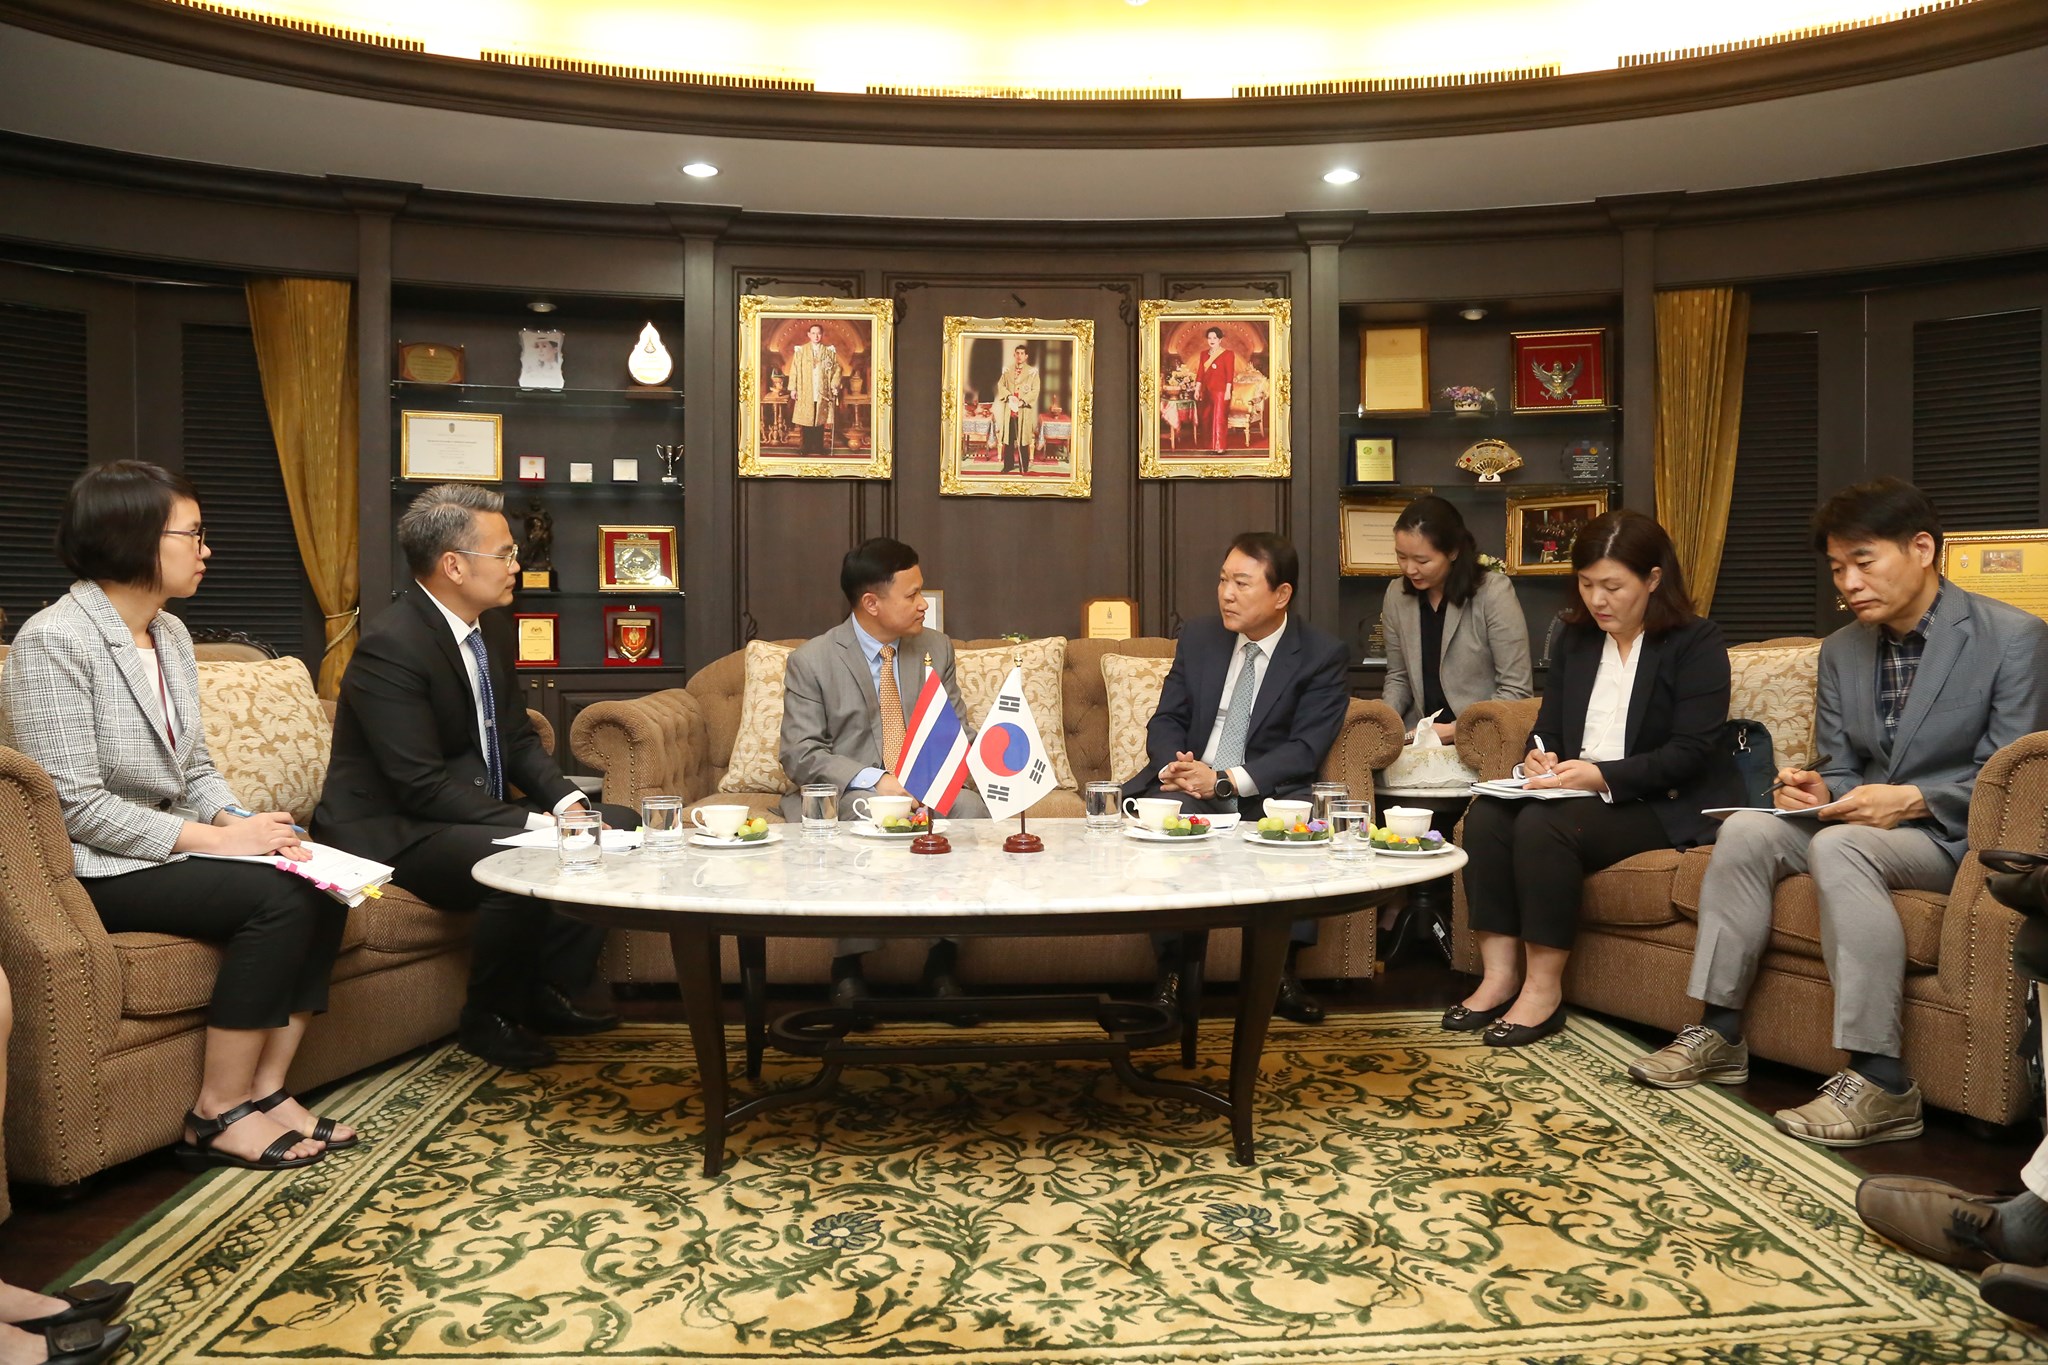 การประชุมหารือทวิภาคี (Bilateral Meeting) ระหว่างสำนักงาน กสทช. และคณะกรรมการการสื่อสารแห่งเกาหลีใต้ (Korea Communications Commission)